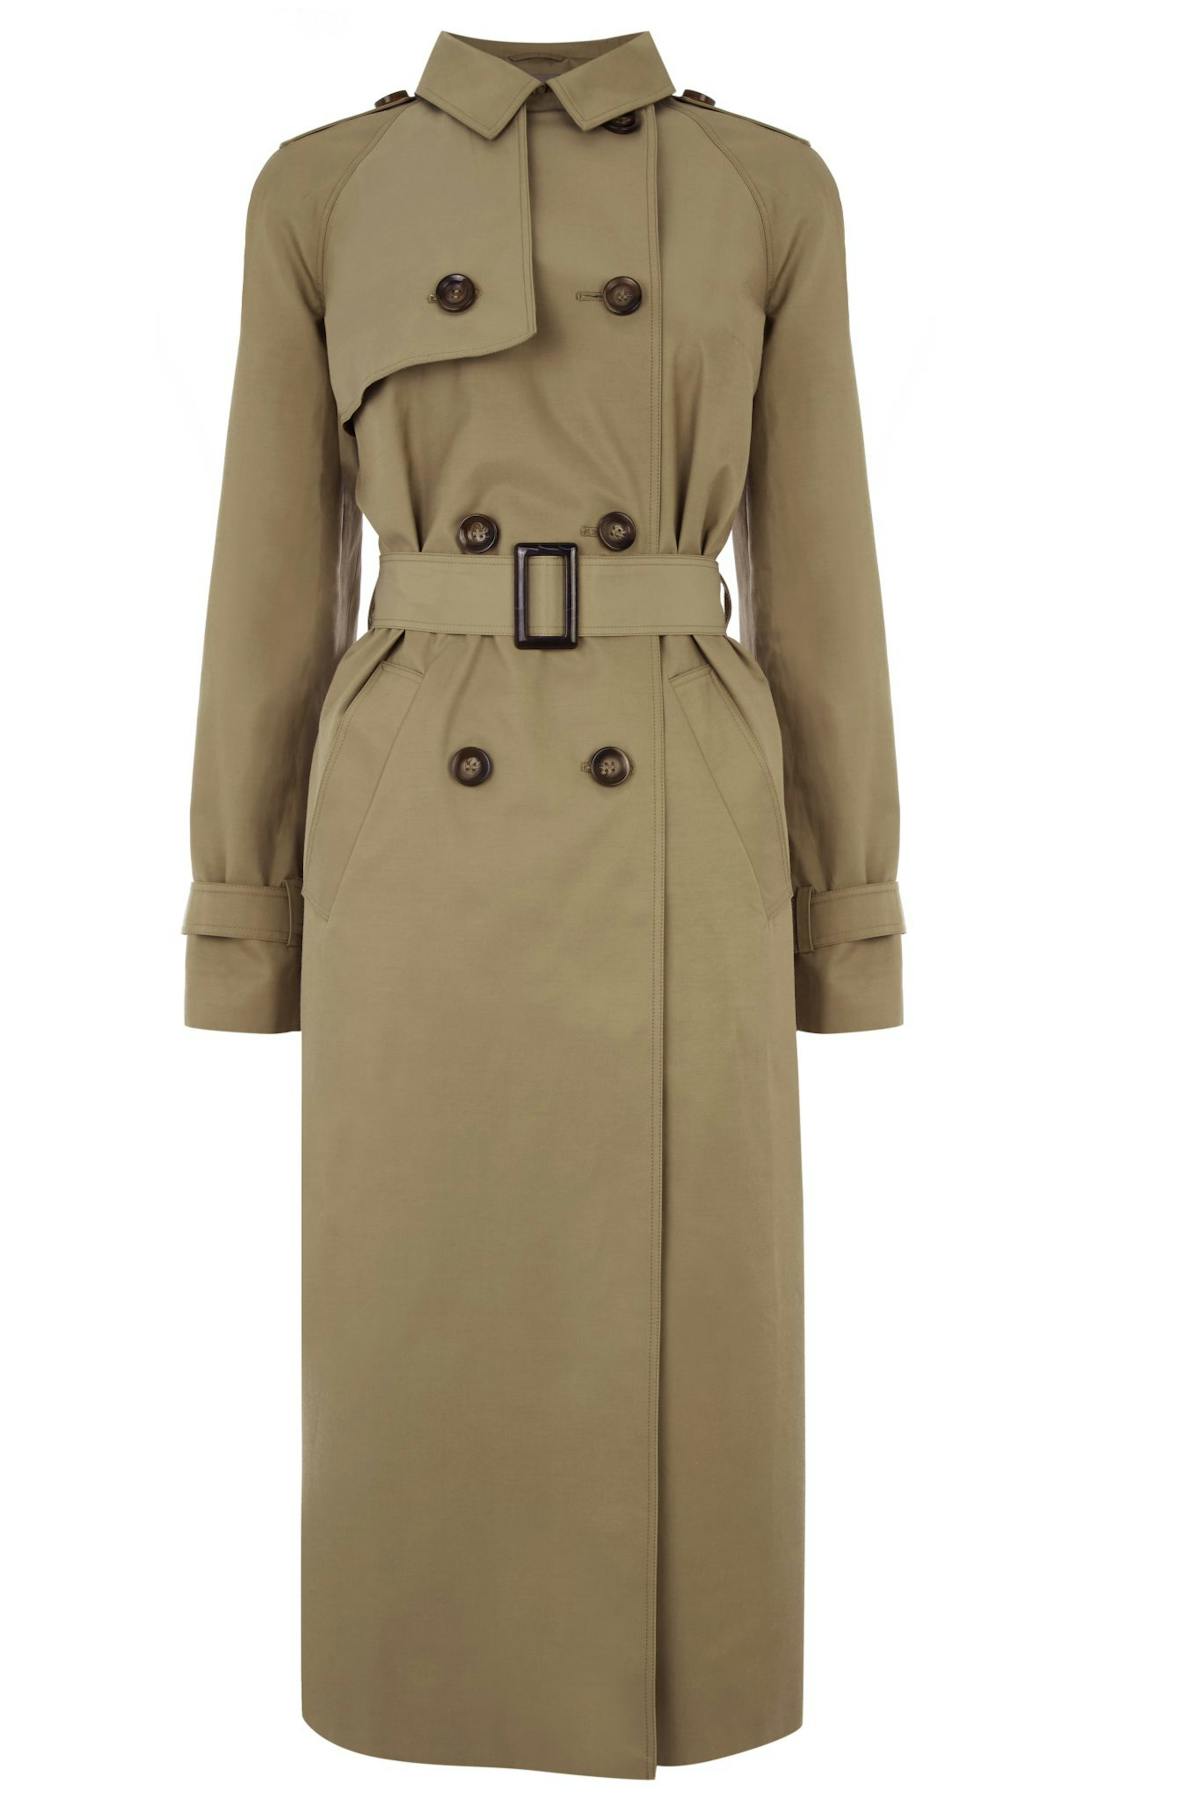 Under £100 coats: best high street coats